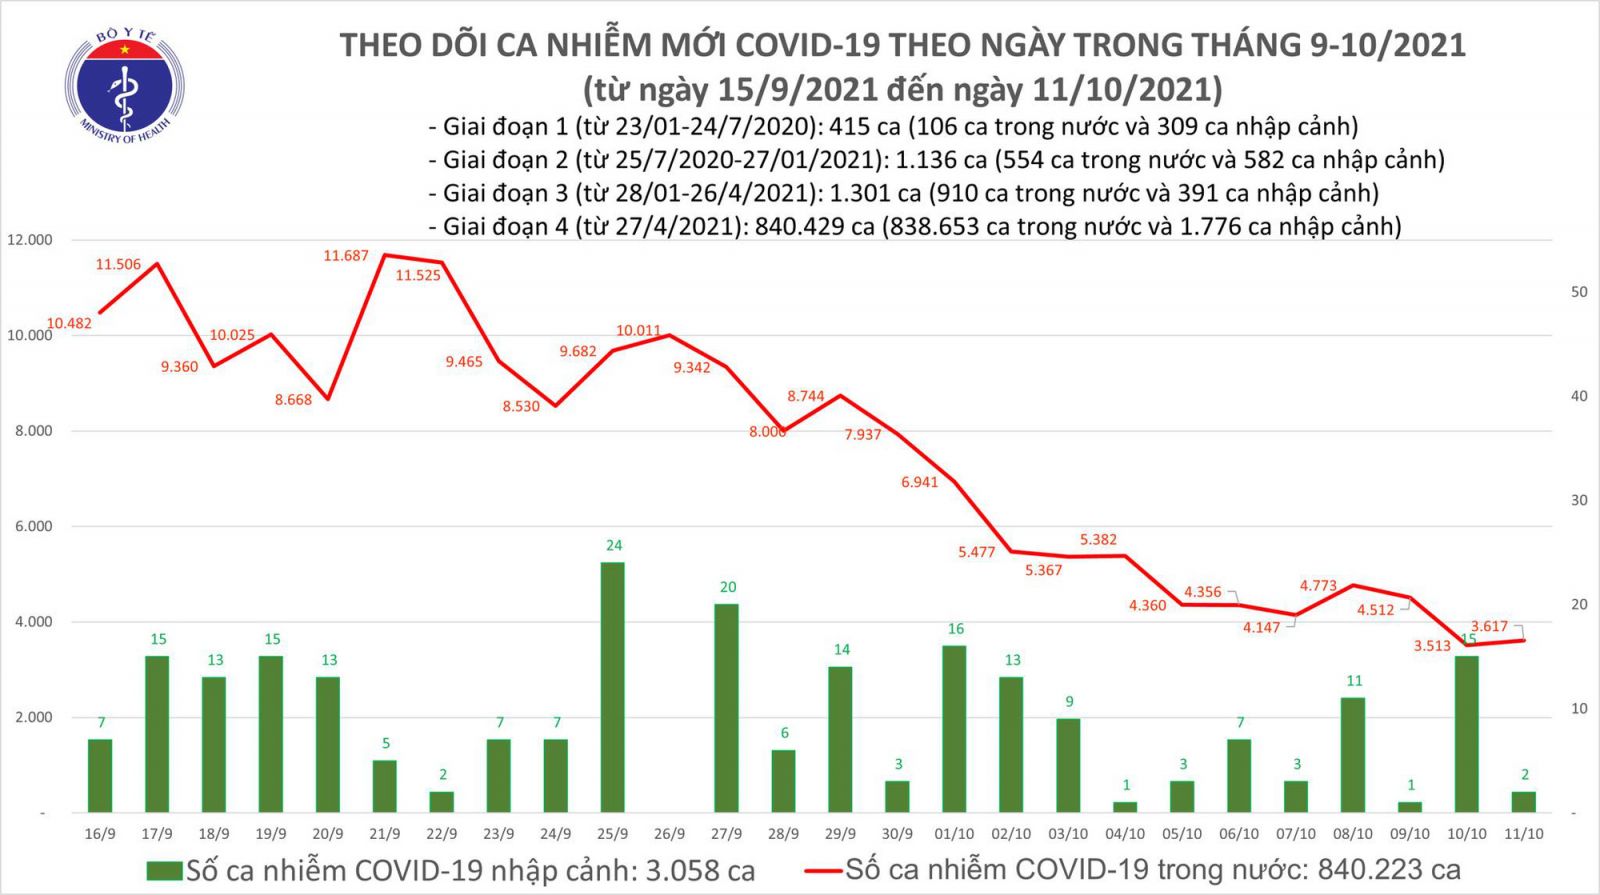 Ngày 11/10: Có 3.619 ca mắc COVID-19 tại 44 địa phương, riêng TP HCM 1.527 ca